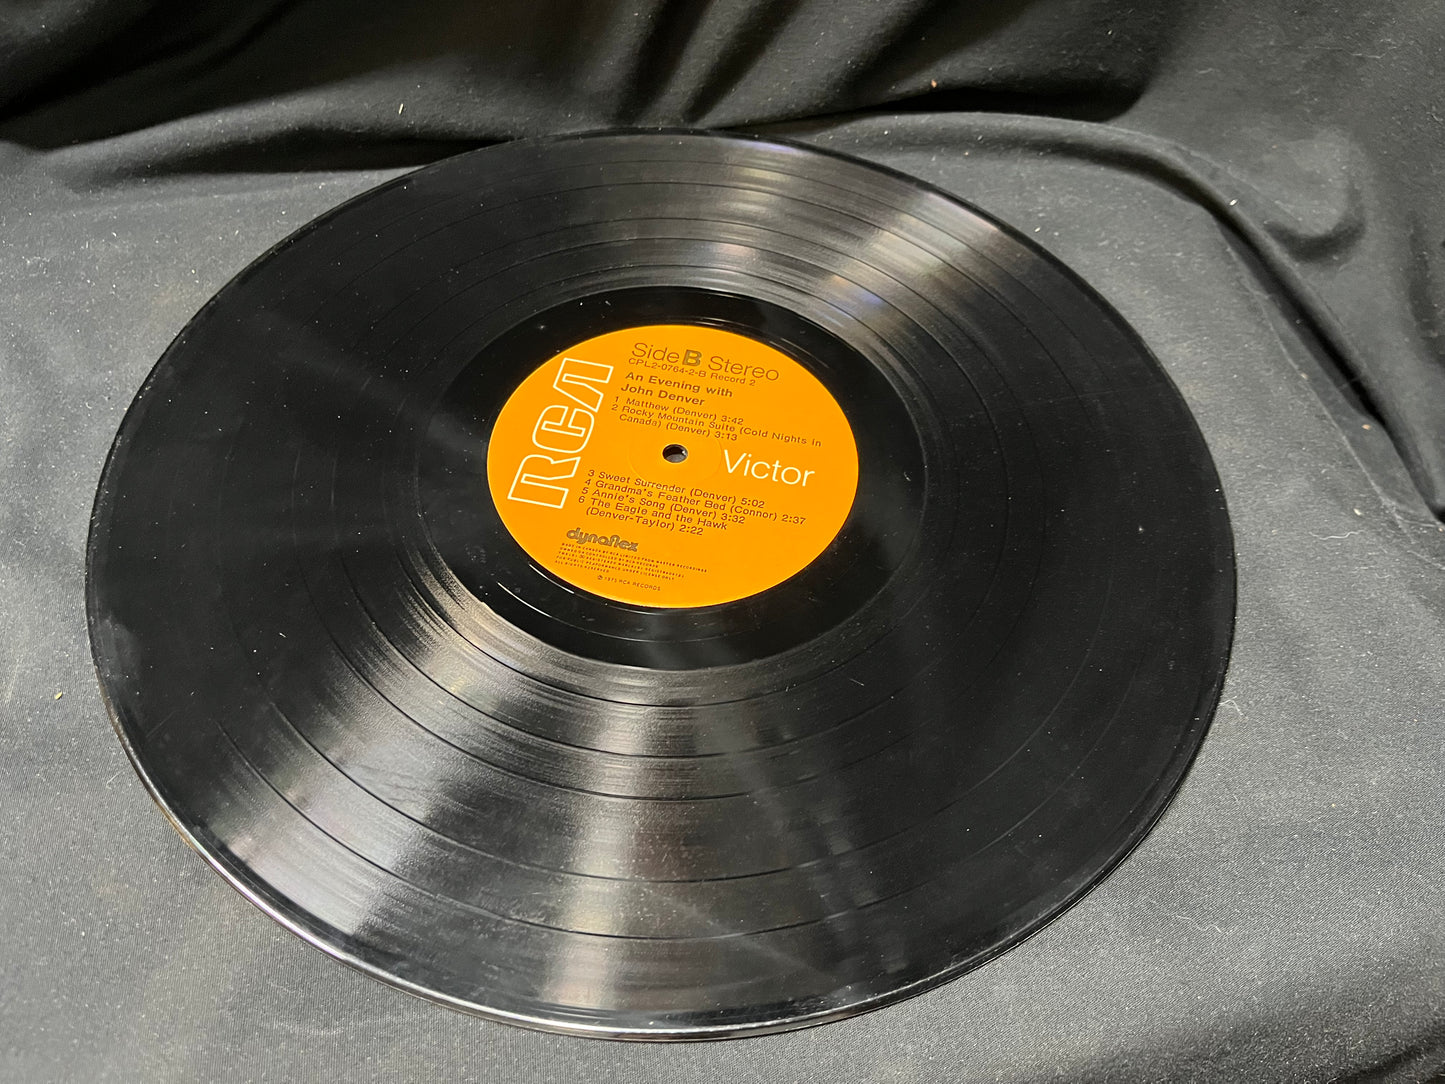 An Evening with John Denver Vinyl